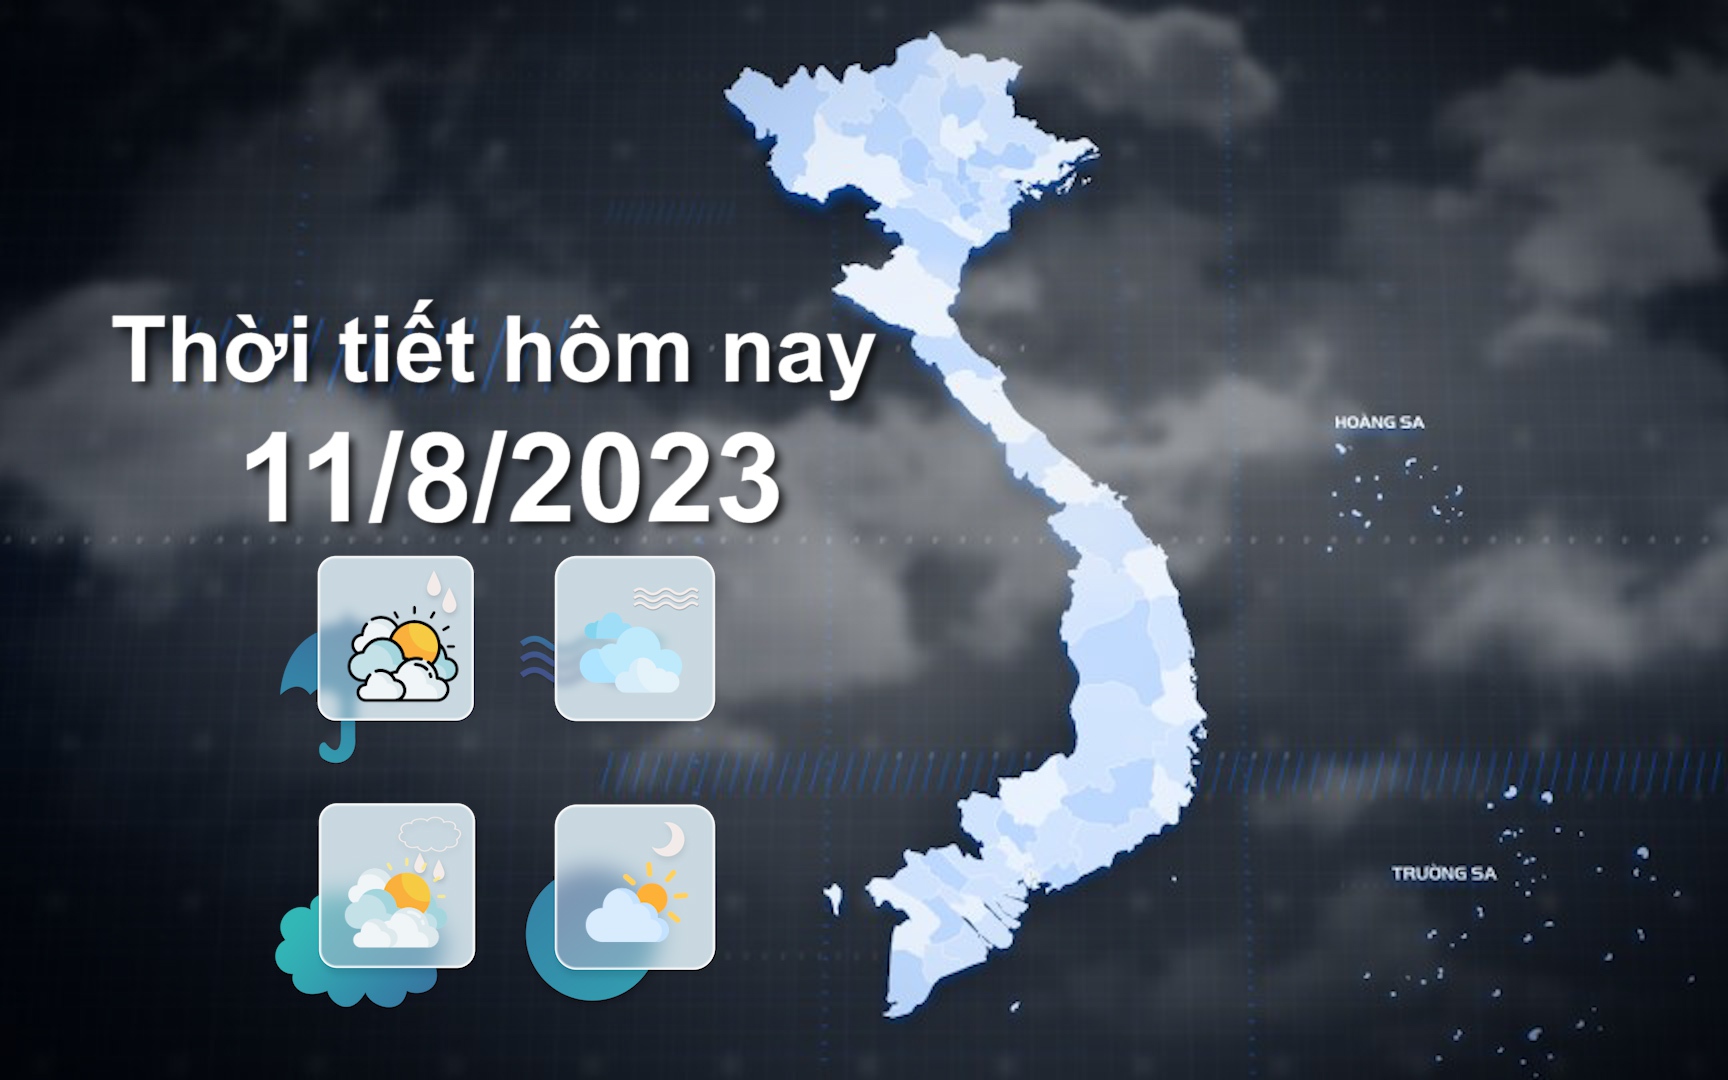 Thời tiết hôm nay 11/8/2023: Bắc Bộ mưa vừa, mưa to đến rất to; Trung Bộ nắng nóng